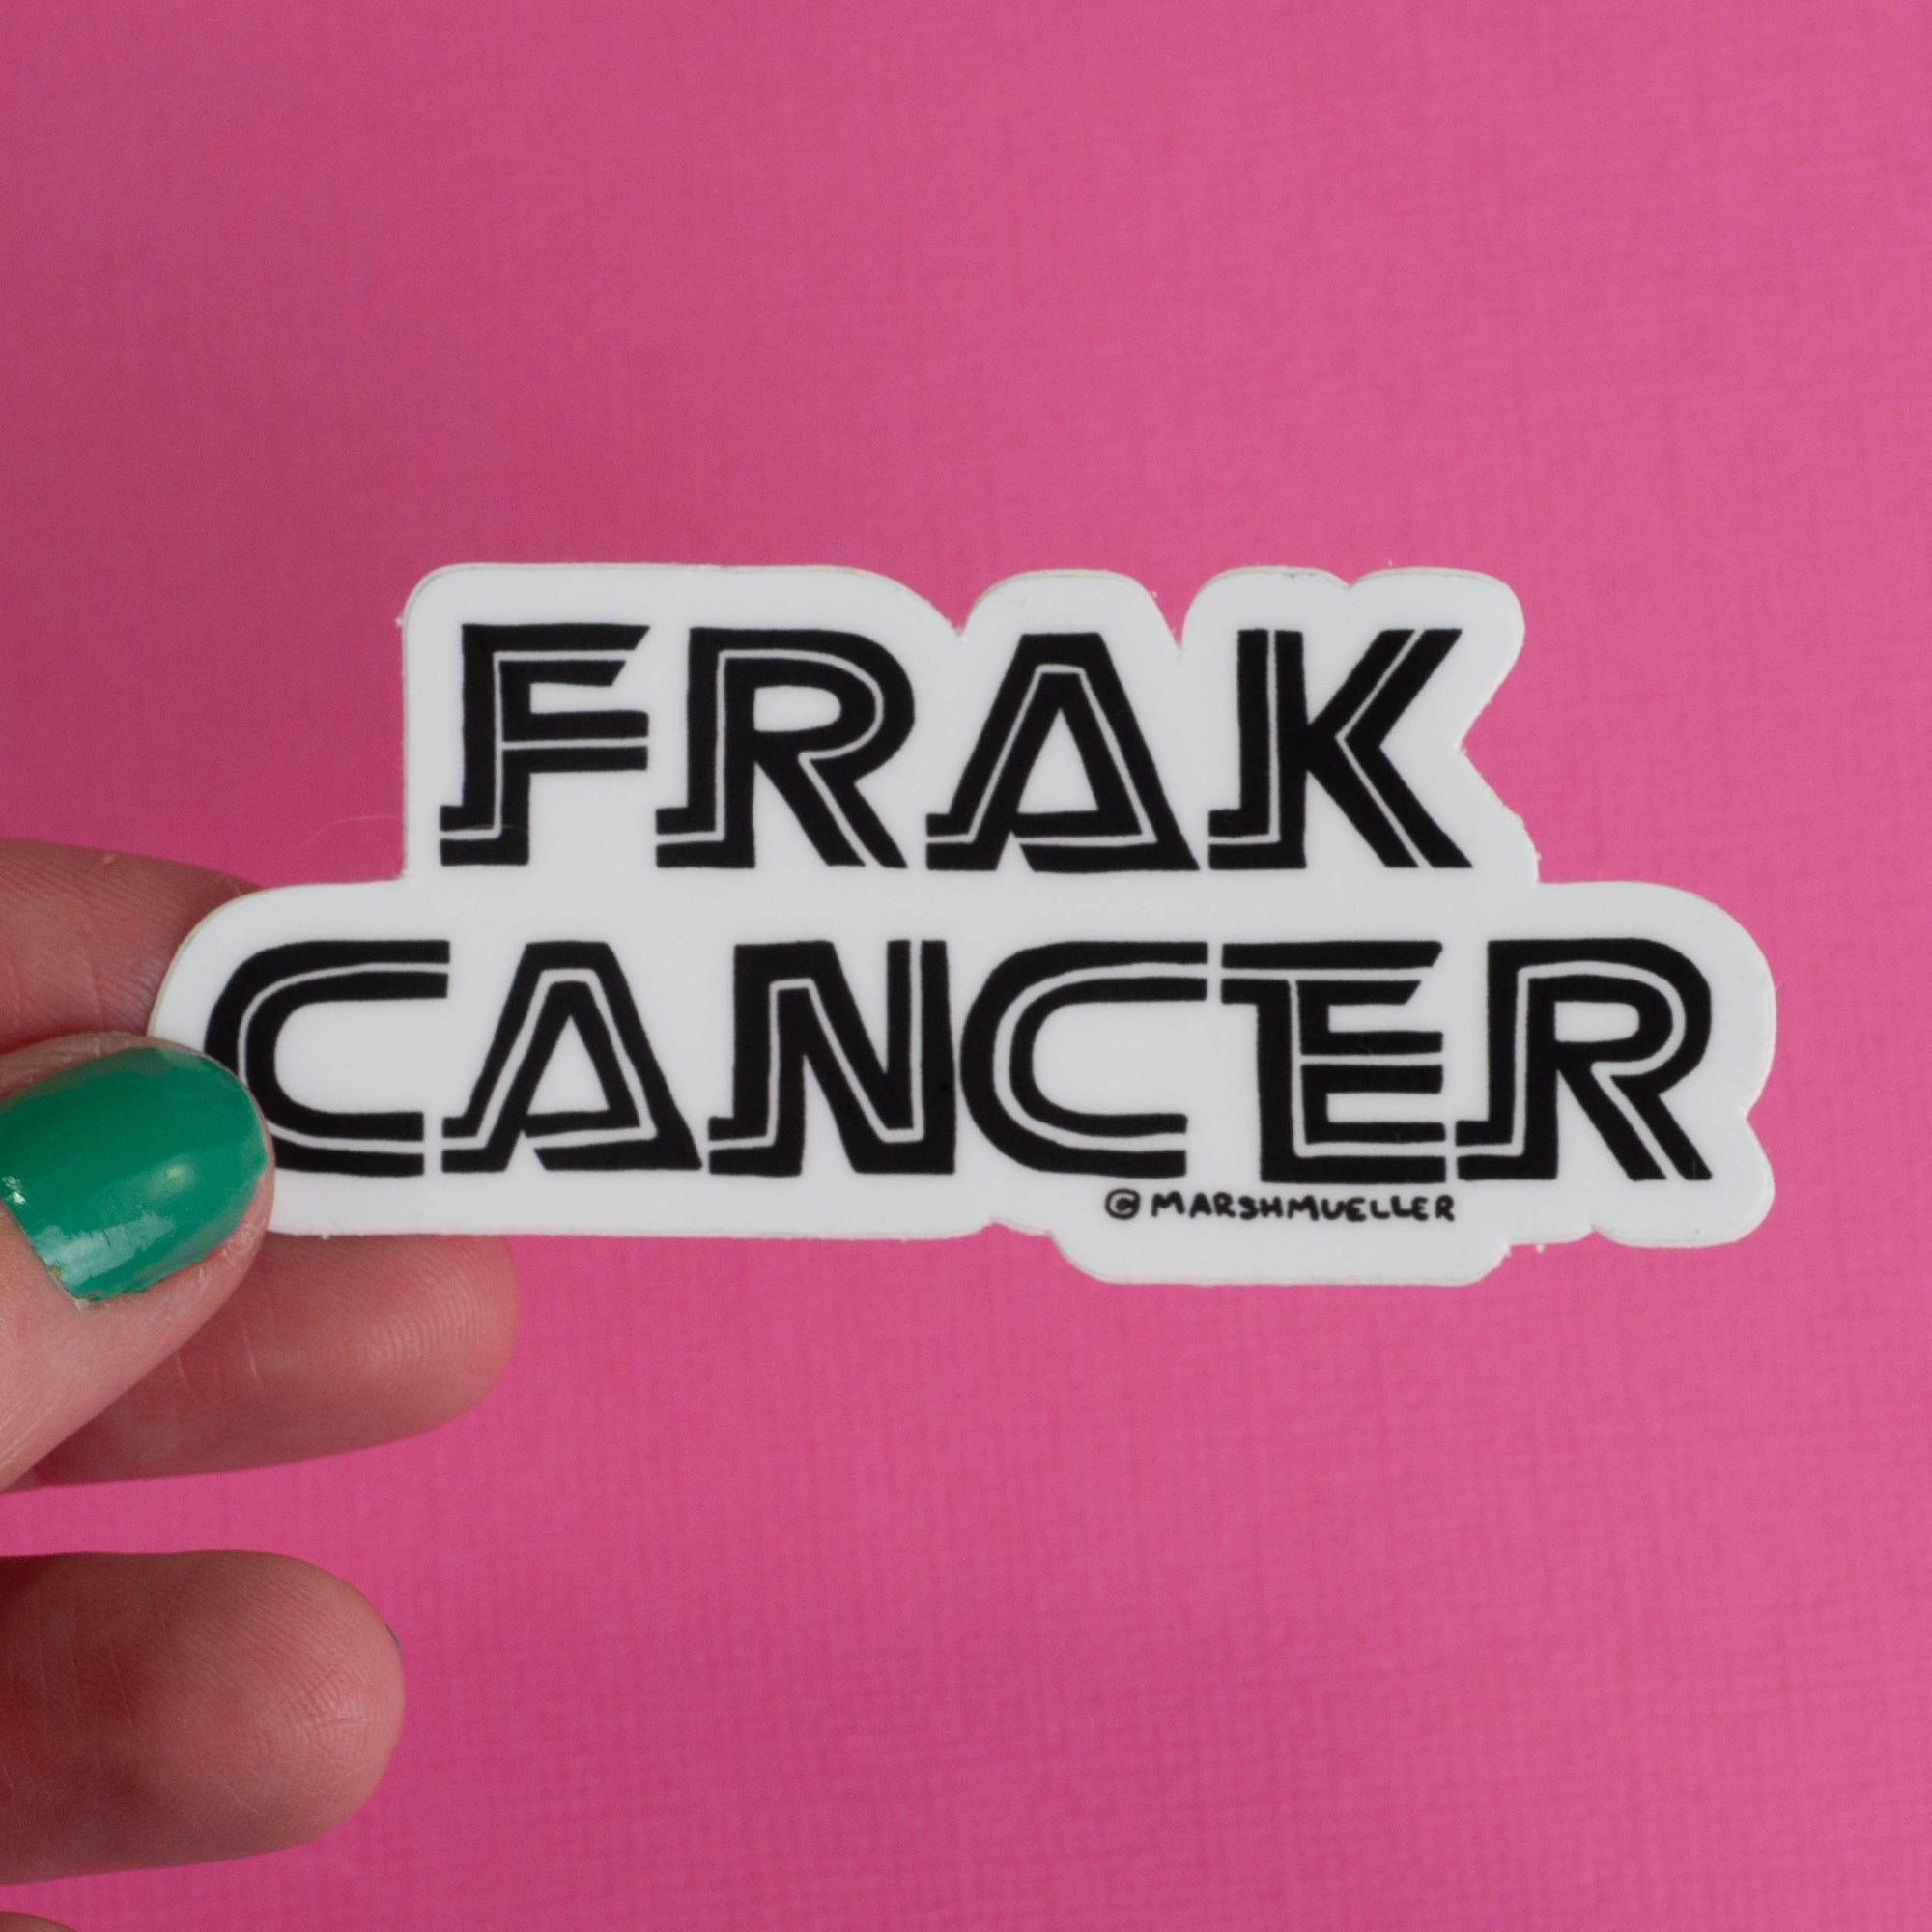 Frak Cancer Sticker